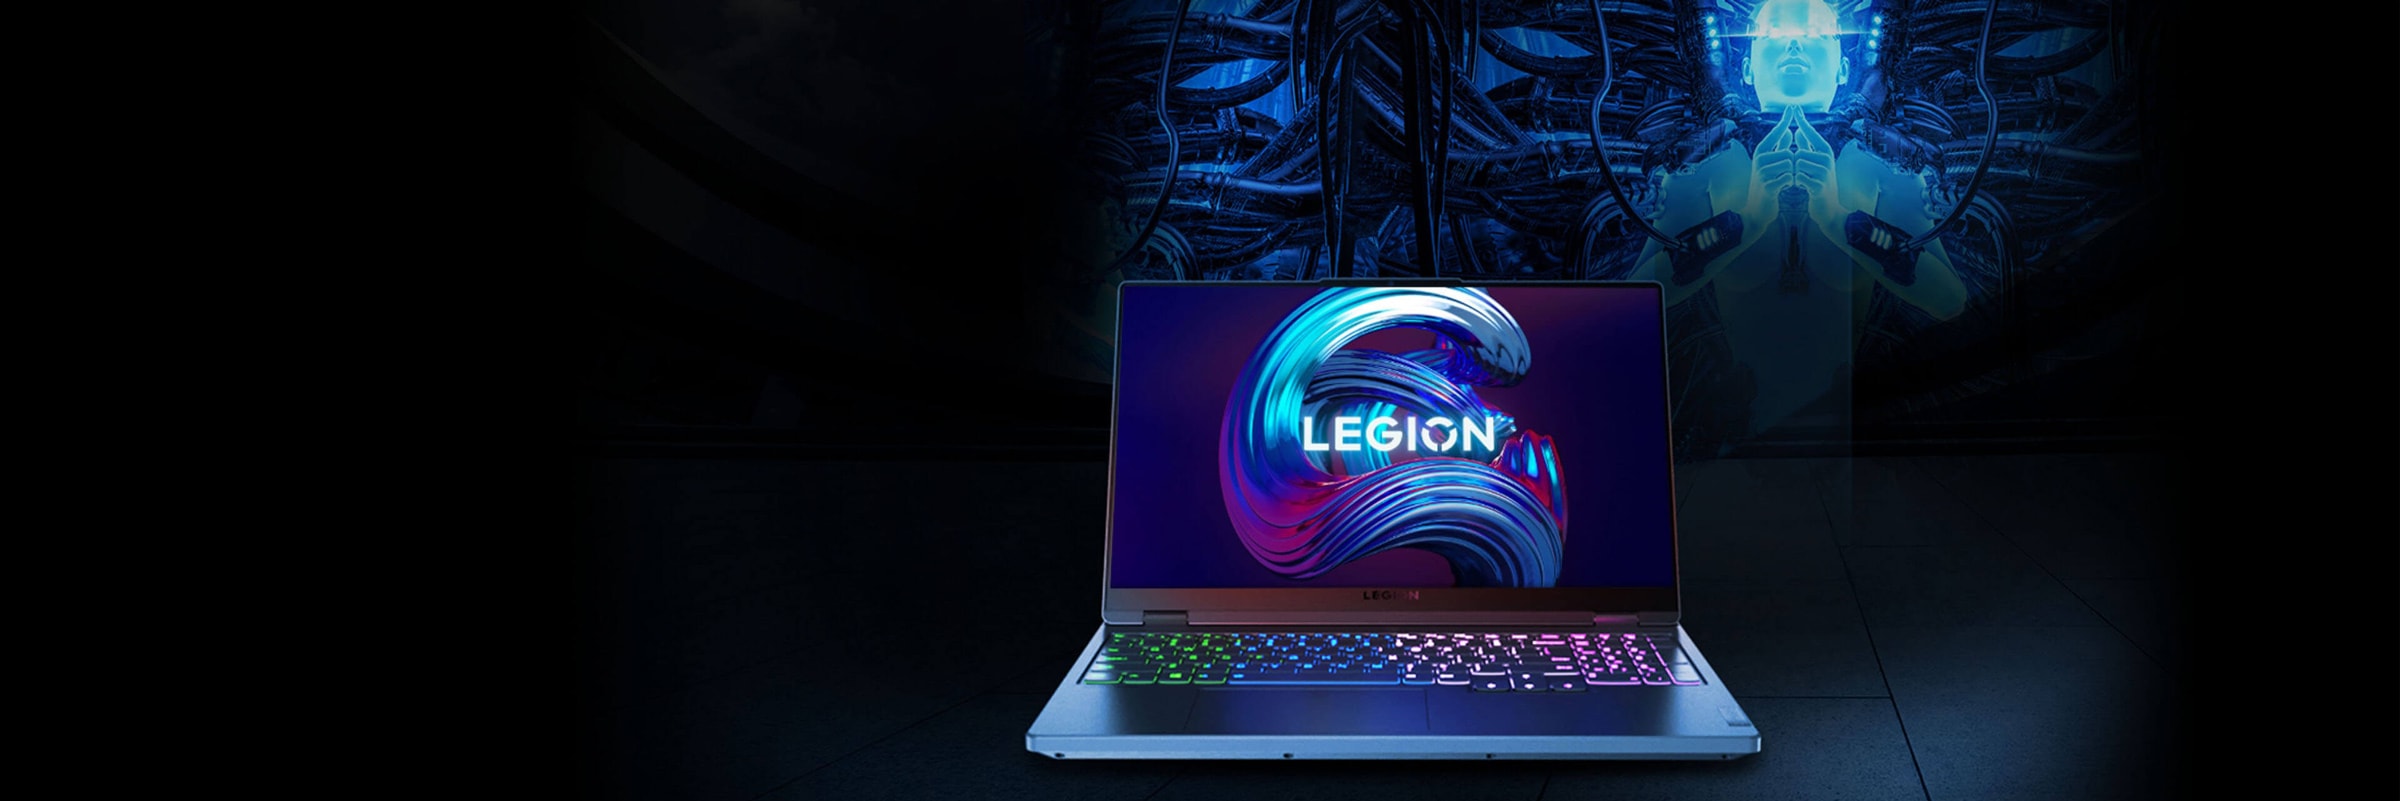 Čelní pohled na notebook Legion otevřený na 90 stupňů, zobrazující obrazovku a klávesnici.